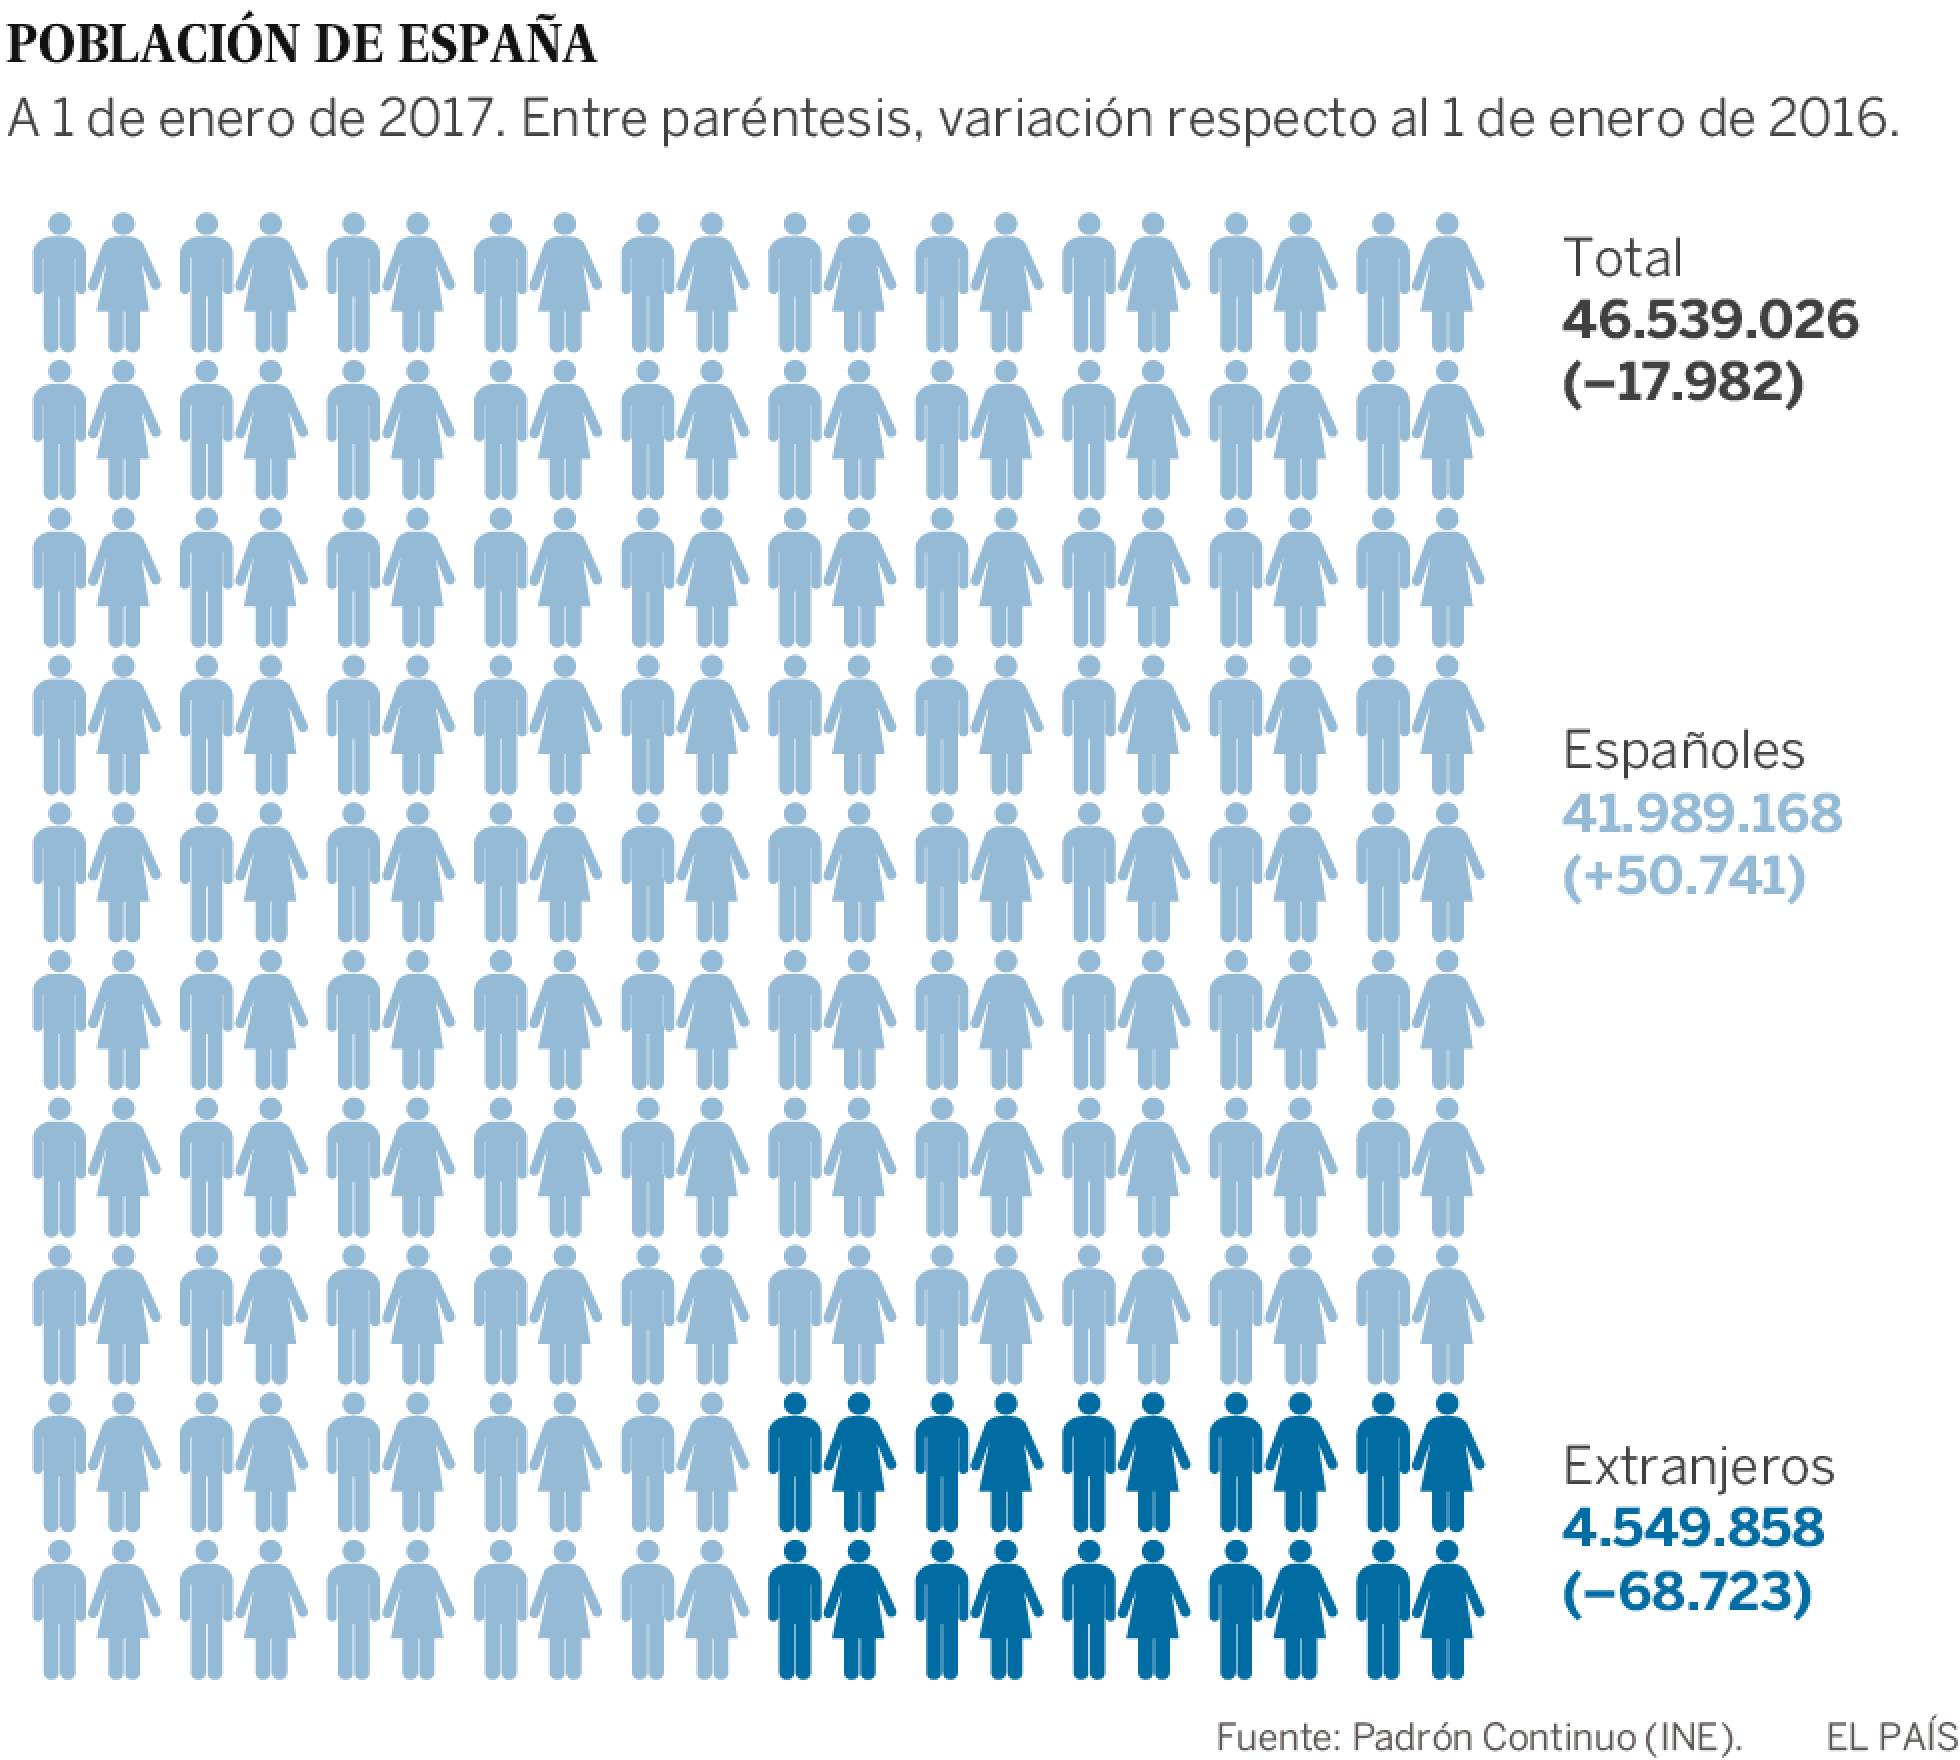 Demografía: Migraciones, emigrantes, inmigrantes en España. - Página 2 1493193374_514621_1493215561_sumario_normal_recorte1